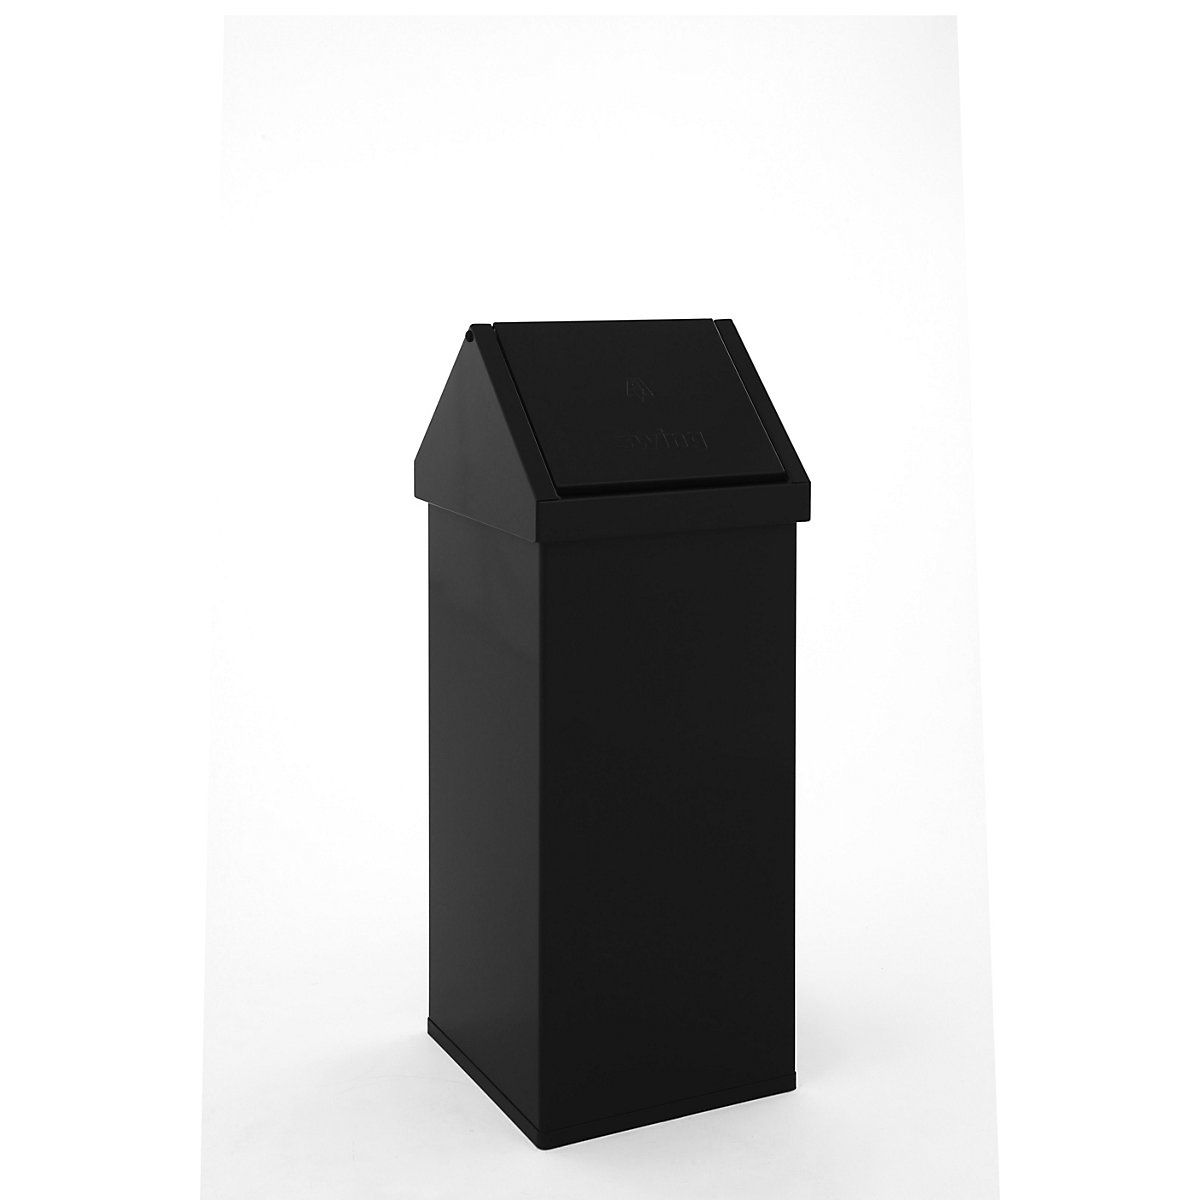 Posoda za odpadke z nihajnim pokrovom, prostornina 110 l, ŠxVxG 360 x 1000 x 360 mm, aluminij, črne barve-2